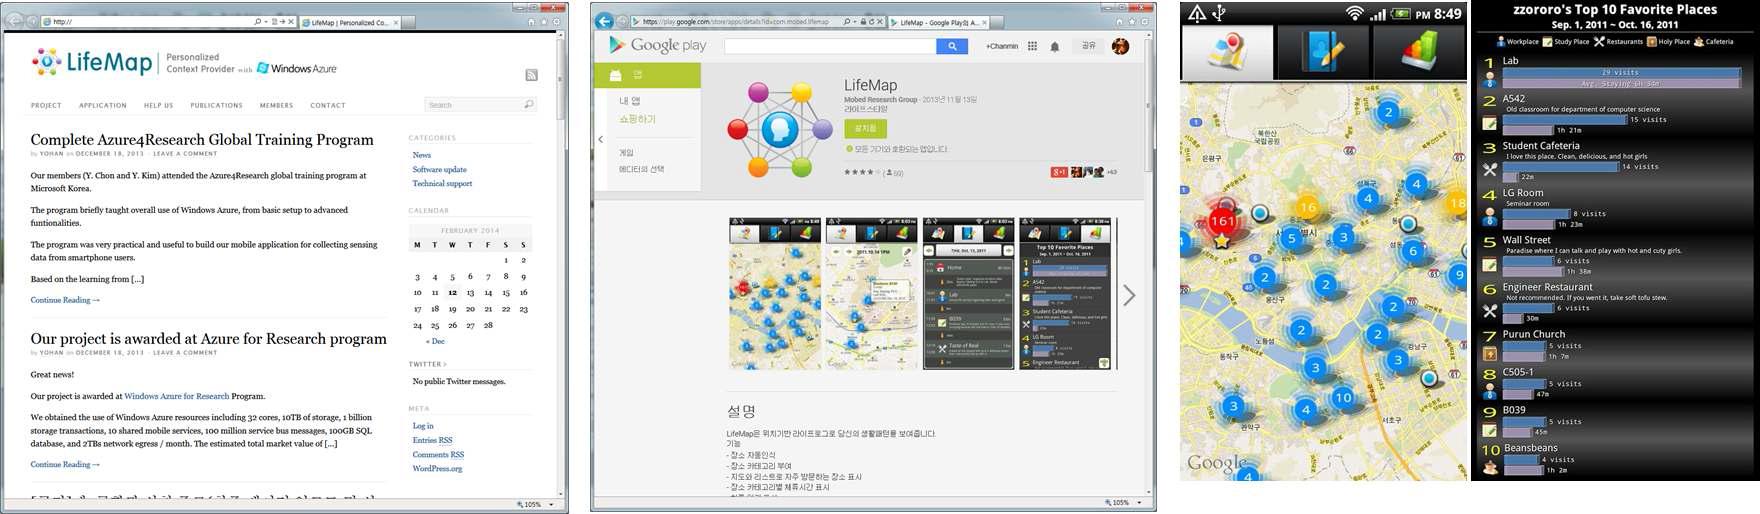 LifeMap 홈페이지, 구글 플레이 마켓 다운로드 페이지 및 실행 화면